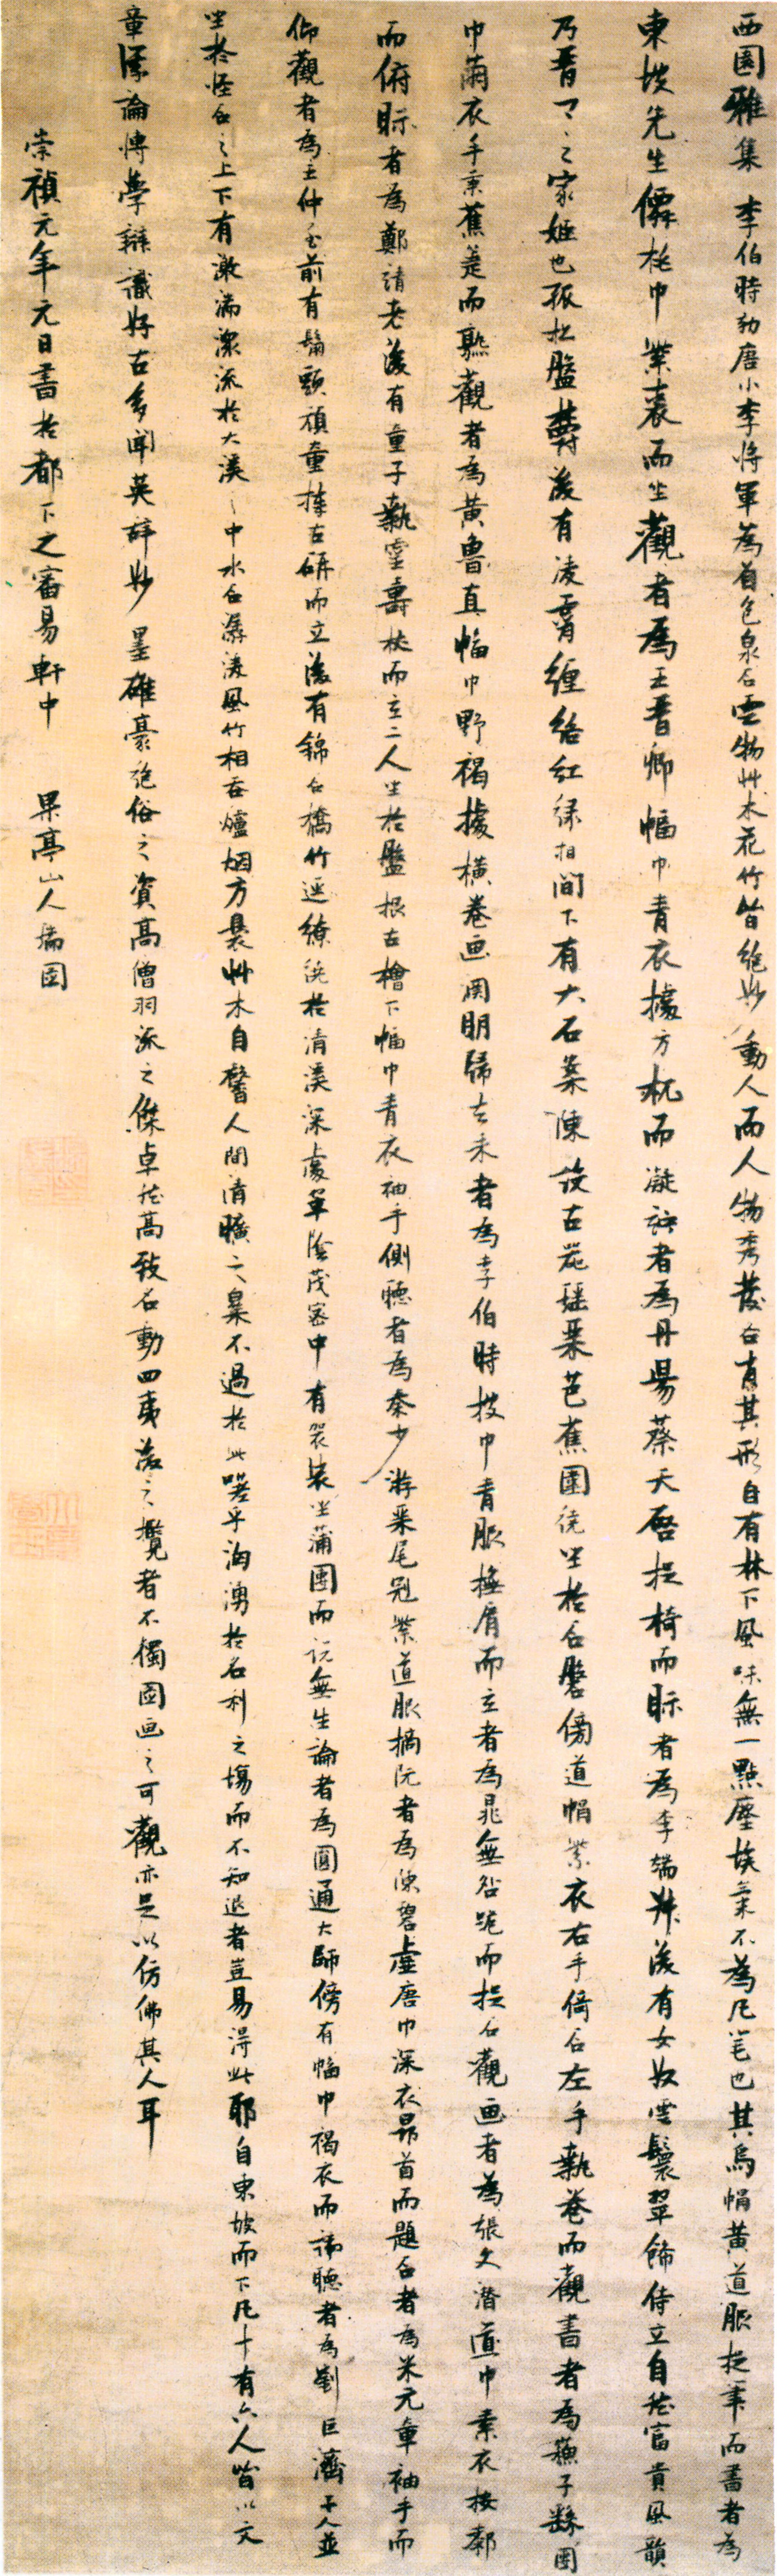 张瑞图行书《西园雅图集轴》-北京故宫博物院藏(图1)